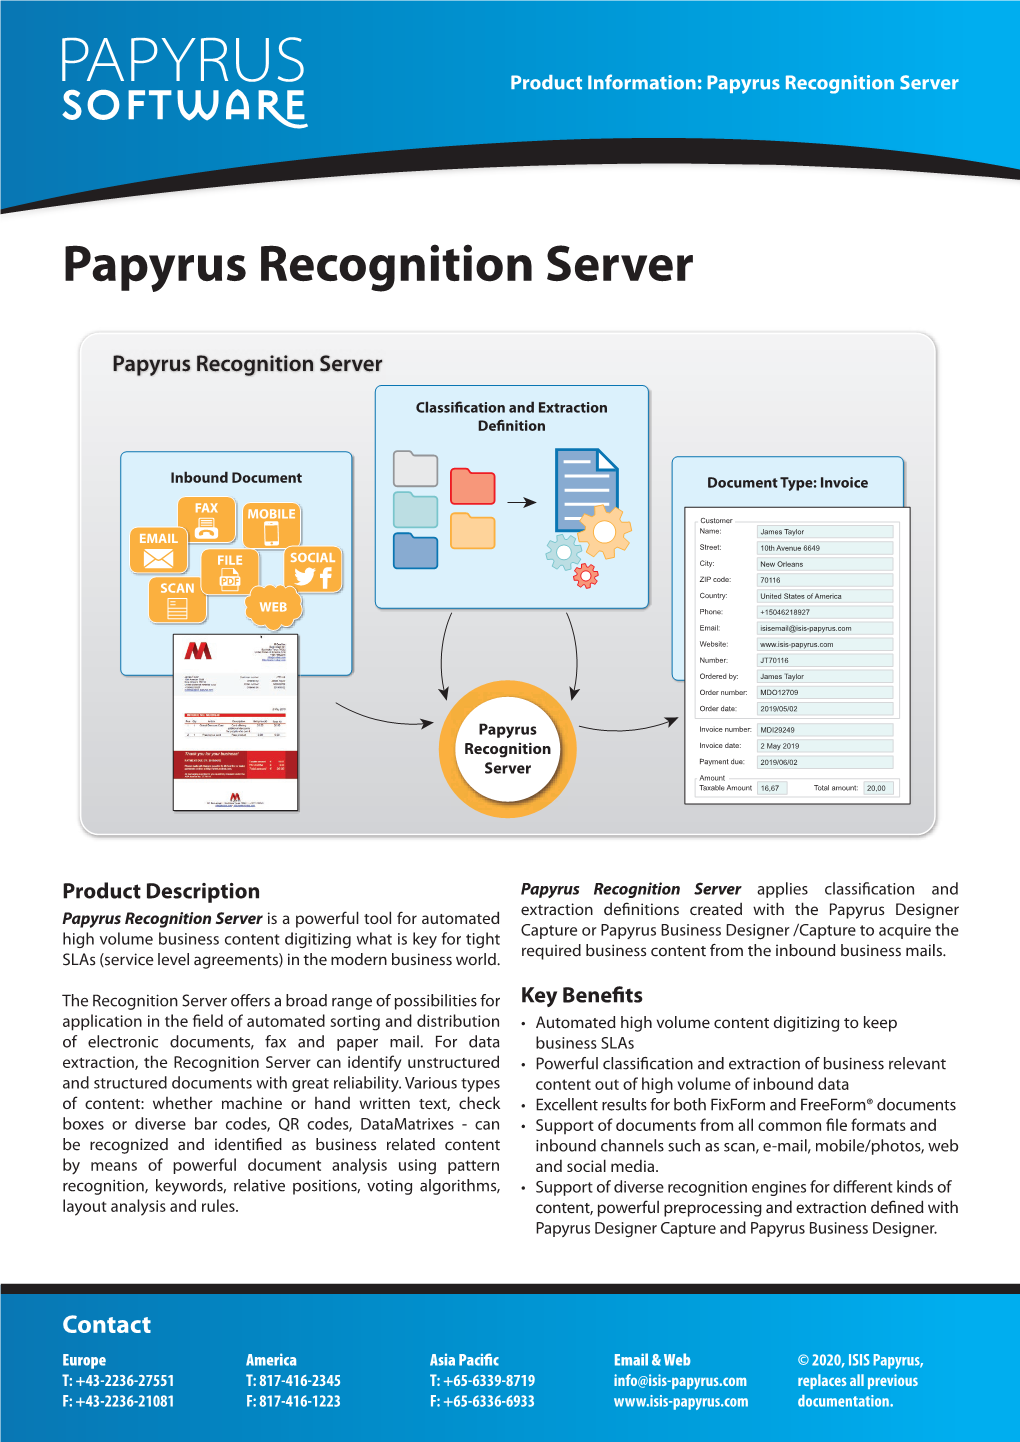 Papyrus Recognition Server